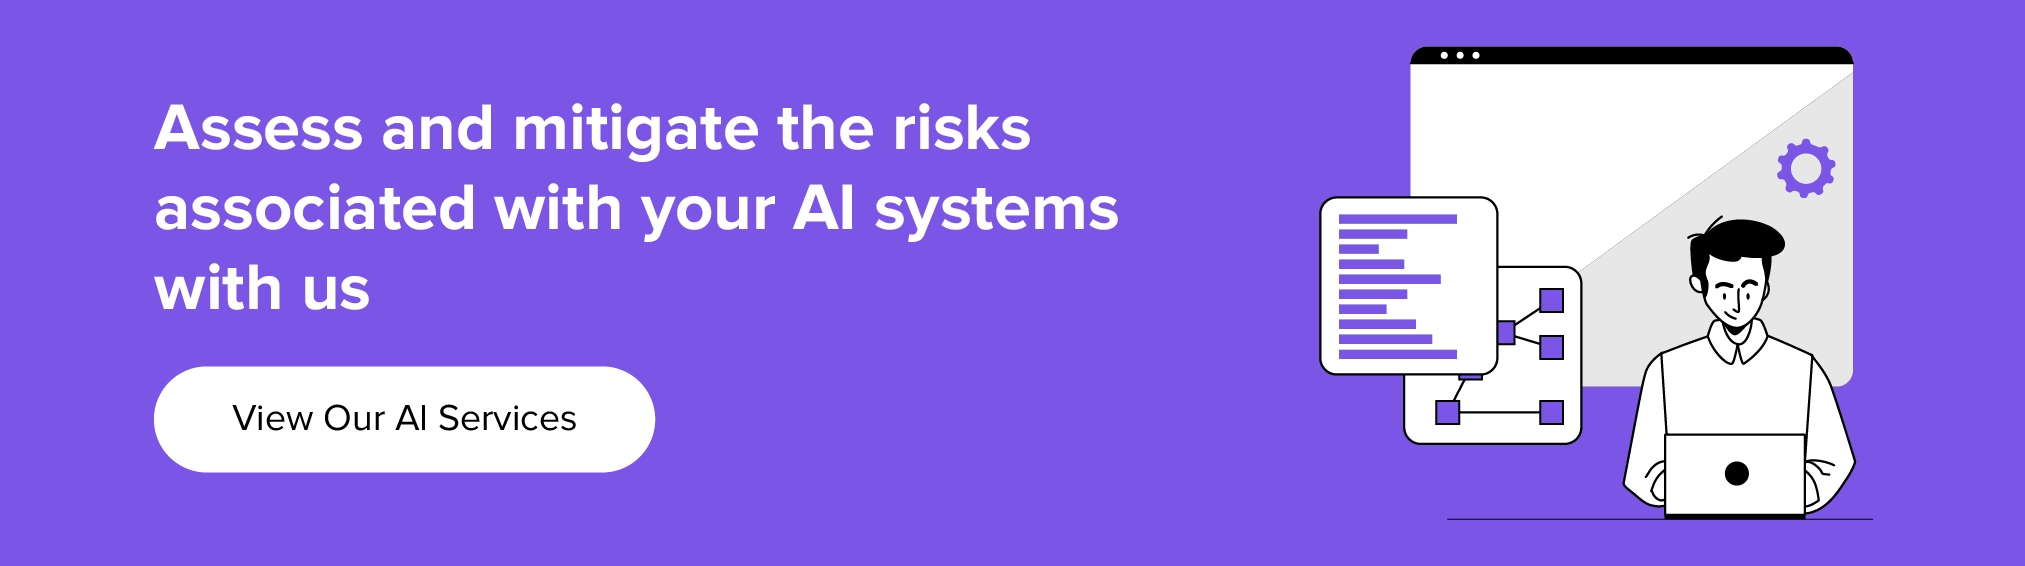 colabore con nosotros para evaluar y mitigar los riesgos asociados con su sistema de IA